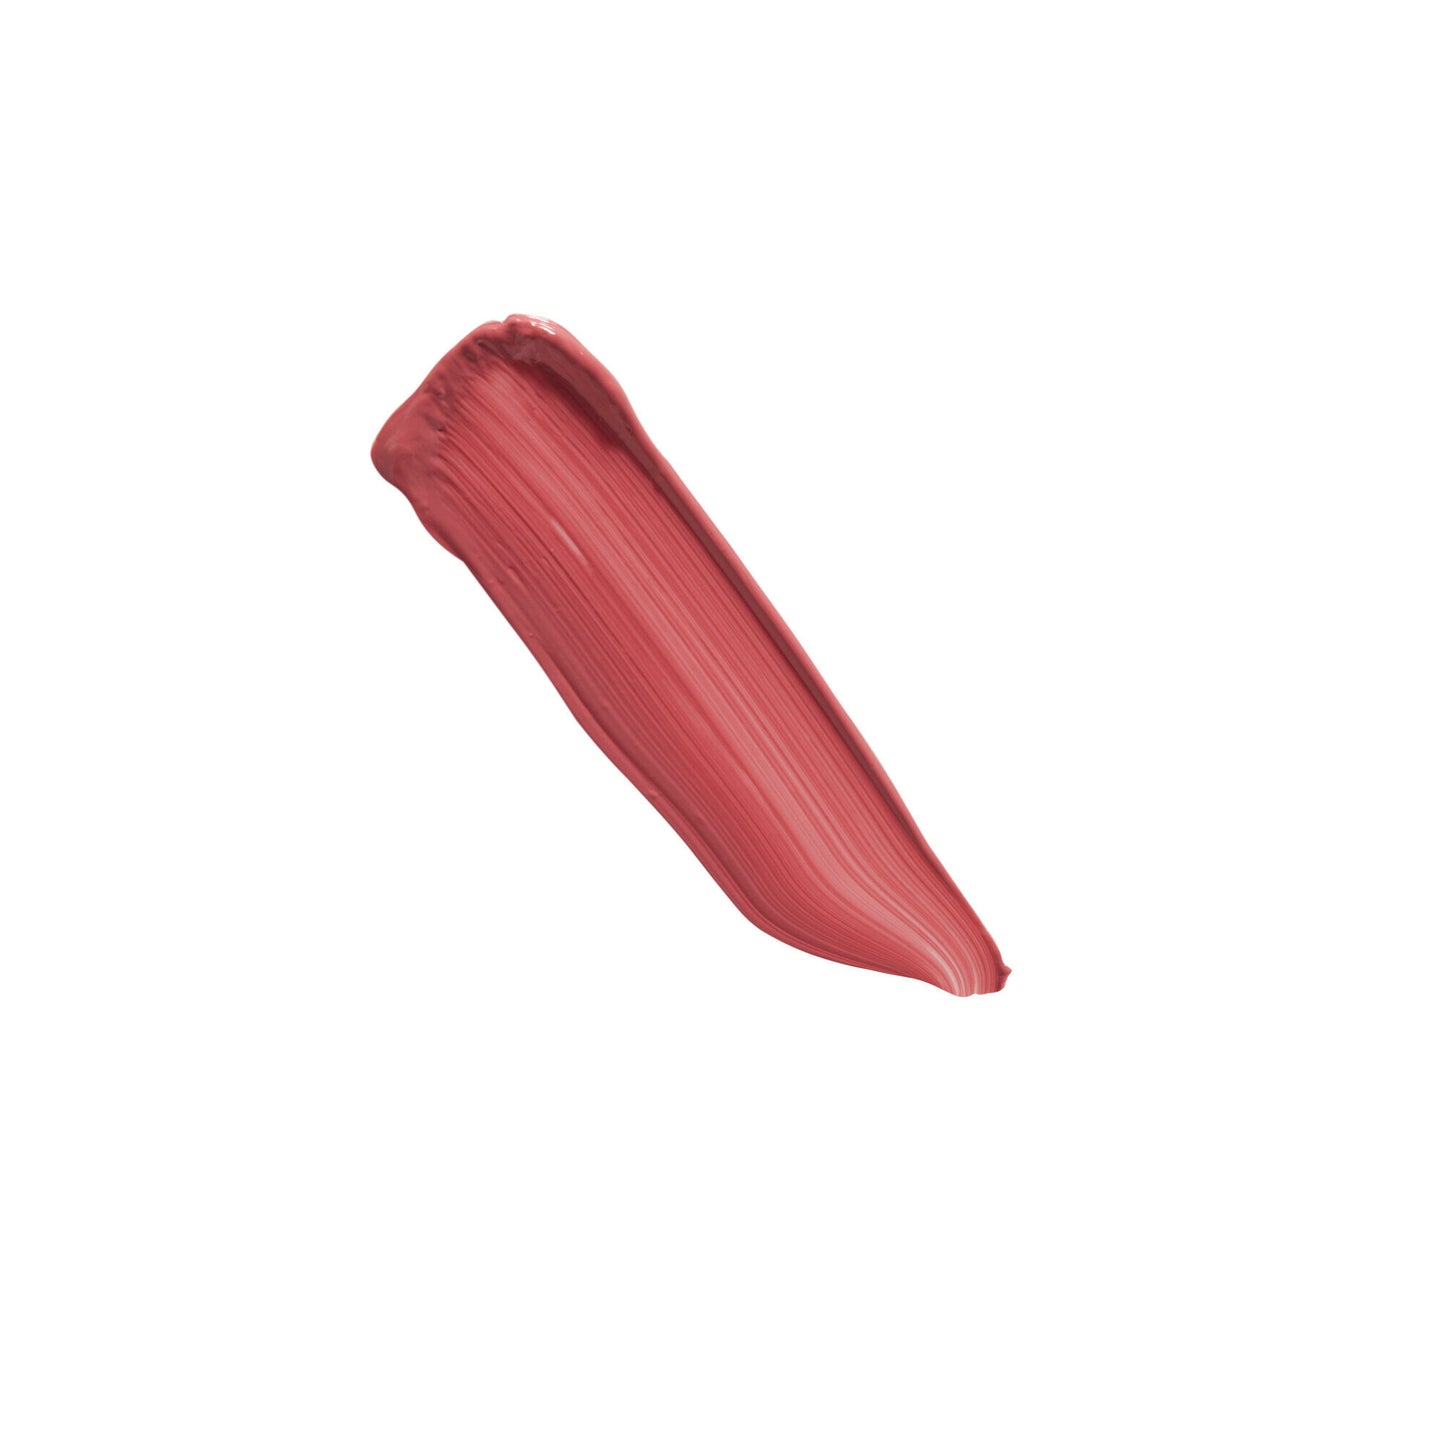 Revolution Matte Bomb Liquid Lipstick Clueless Fuchsia